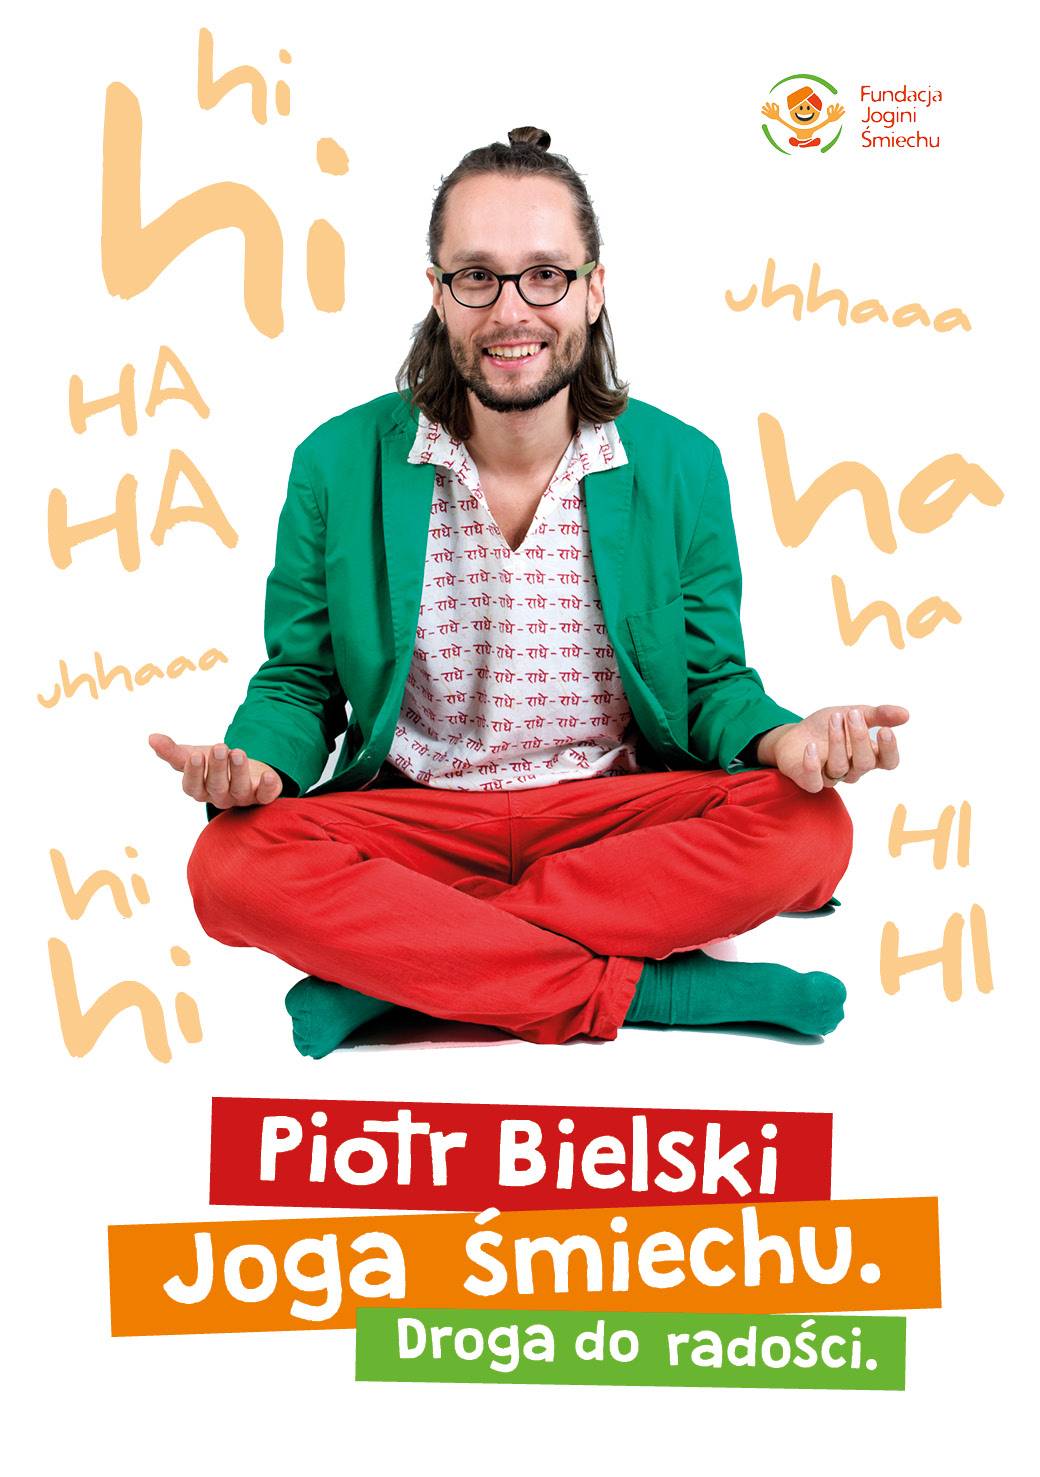 Piotr Bielski, trener jogi śmiechu. Okładka książki "Joga śmiechu. Droga do radości"